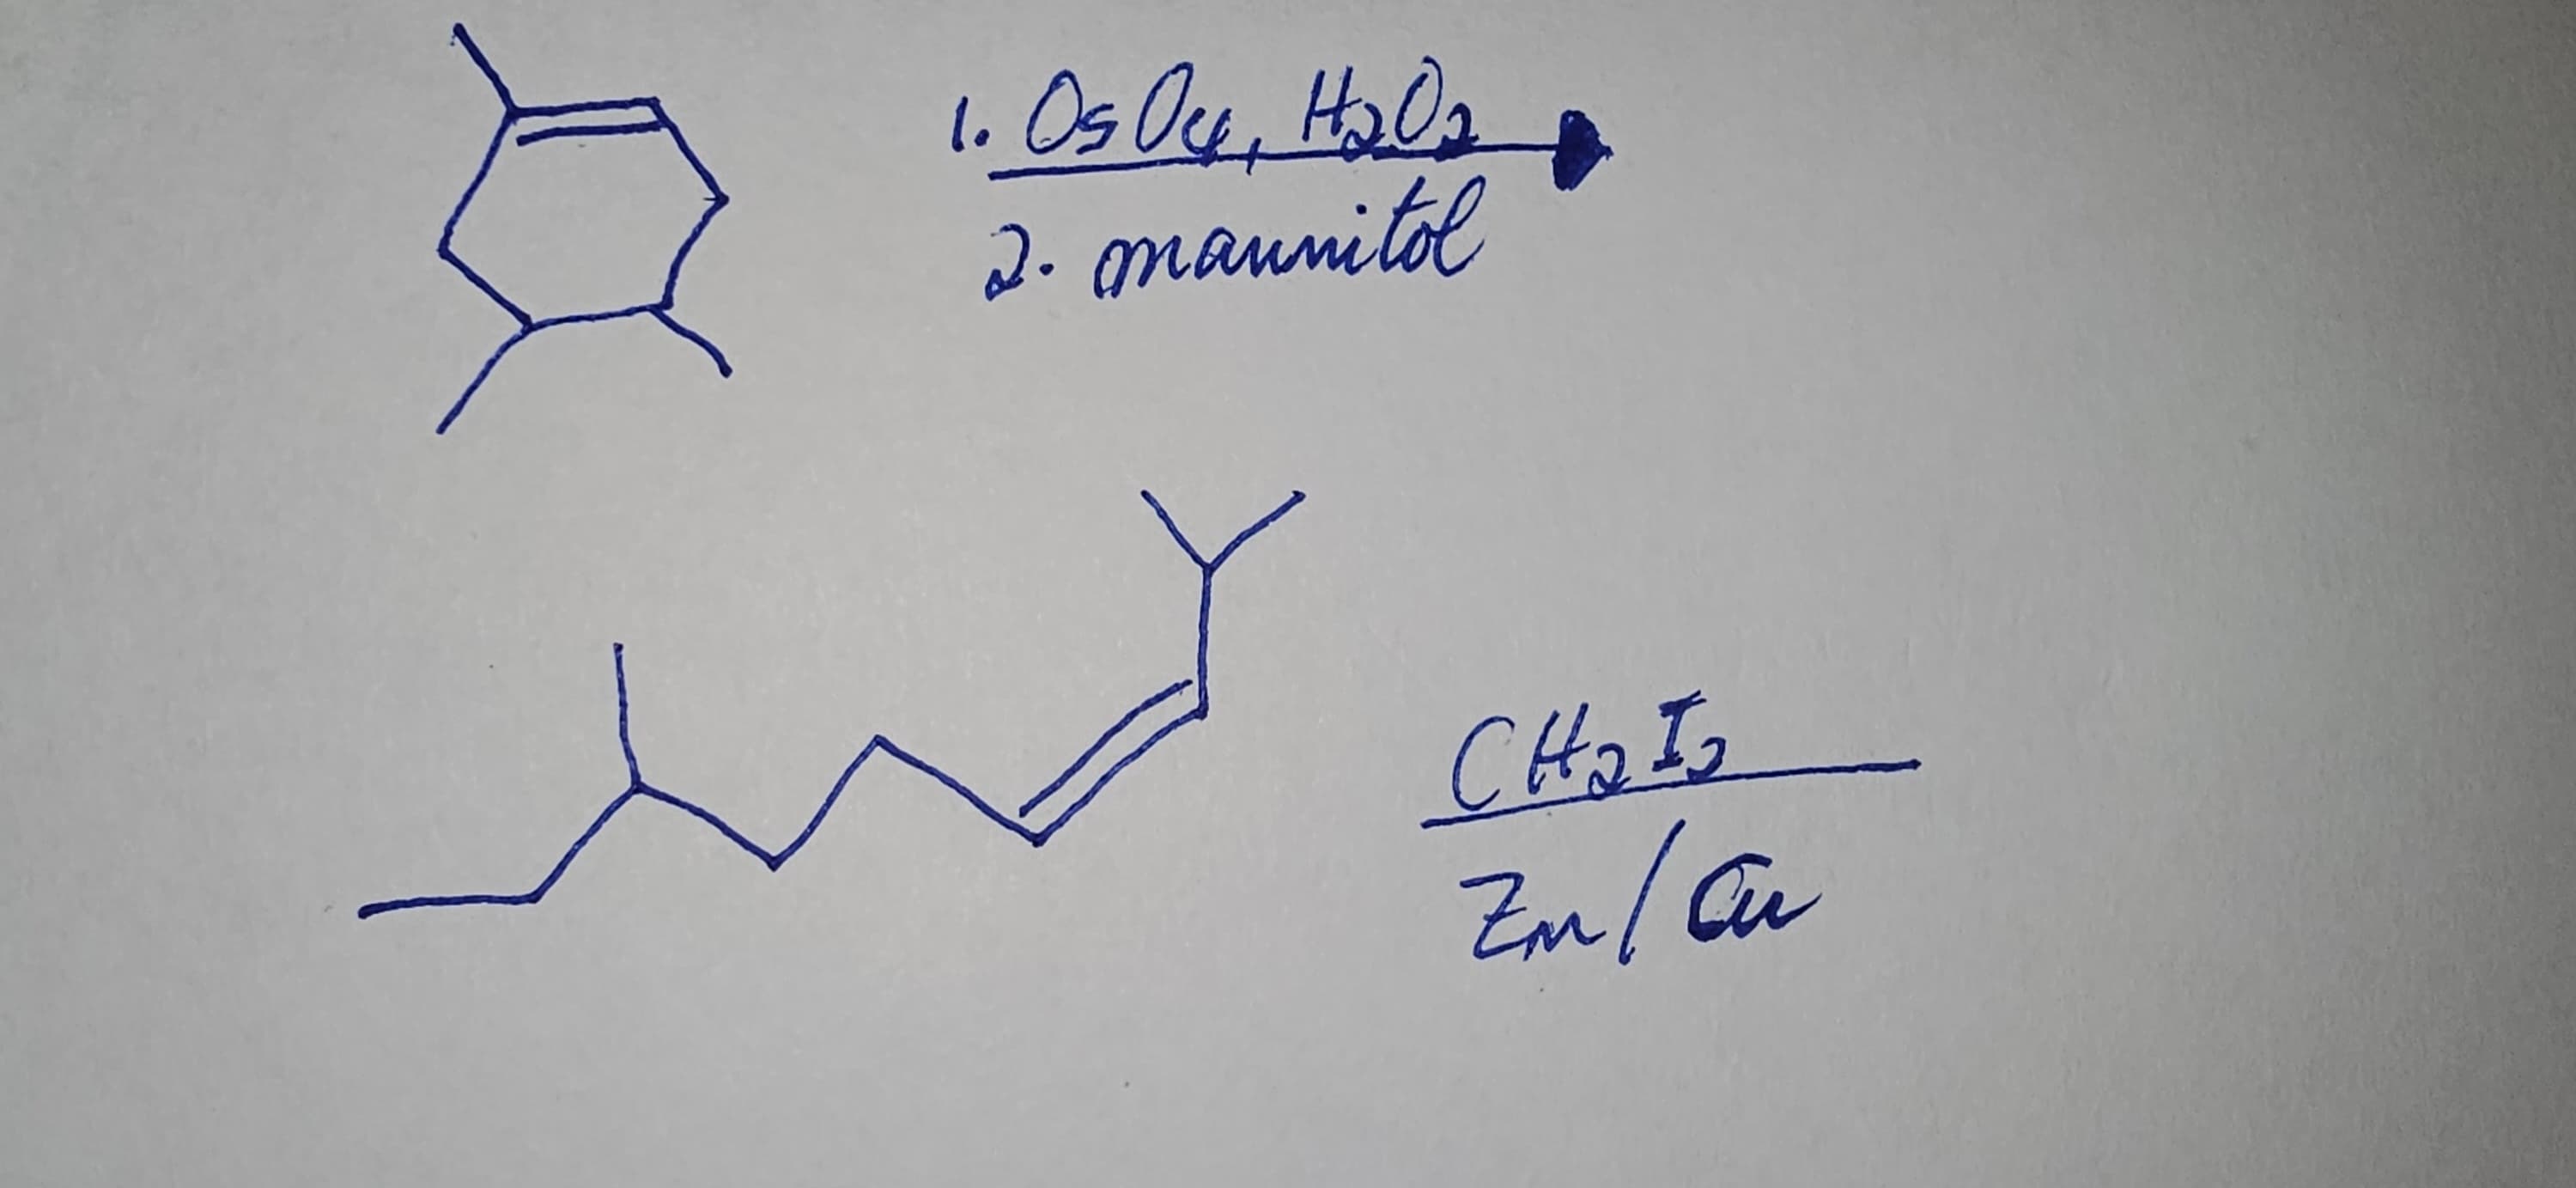 1. Os Oy, H₂O₂
2. mannitol
CH₂I₂
Zm/ar